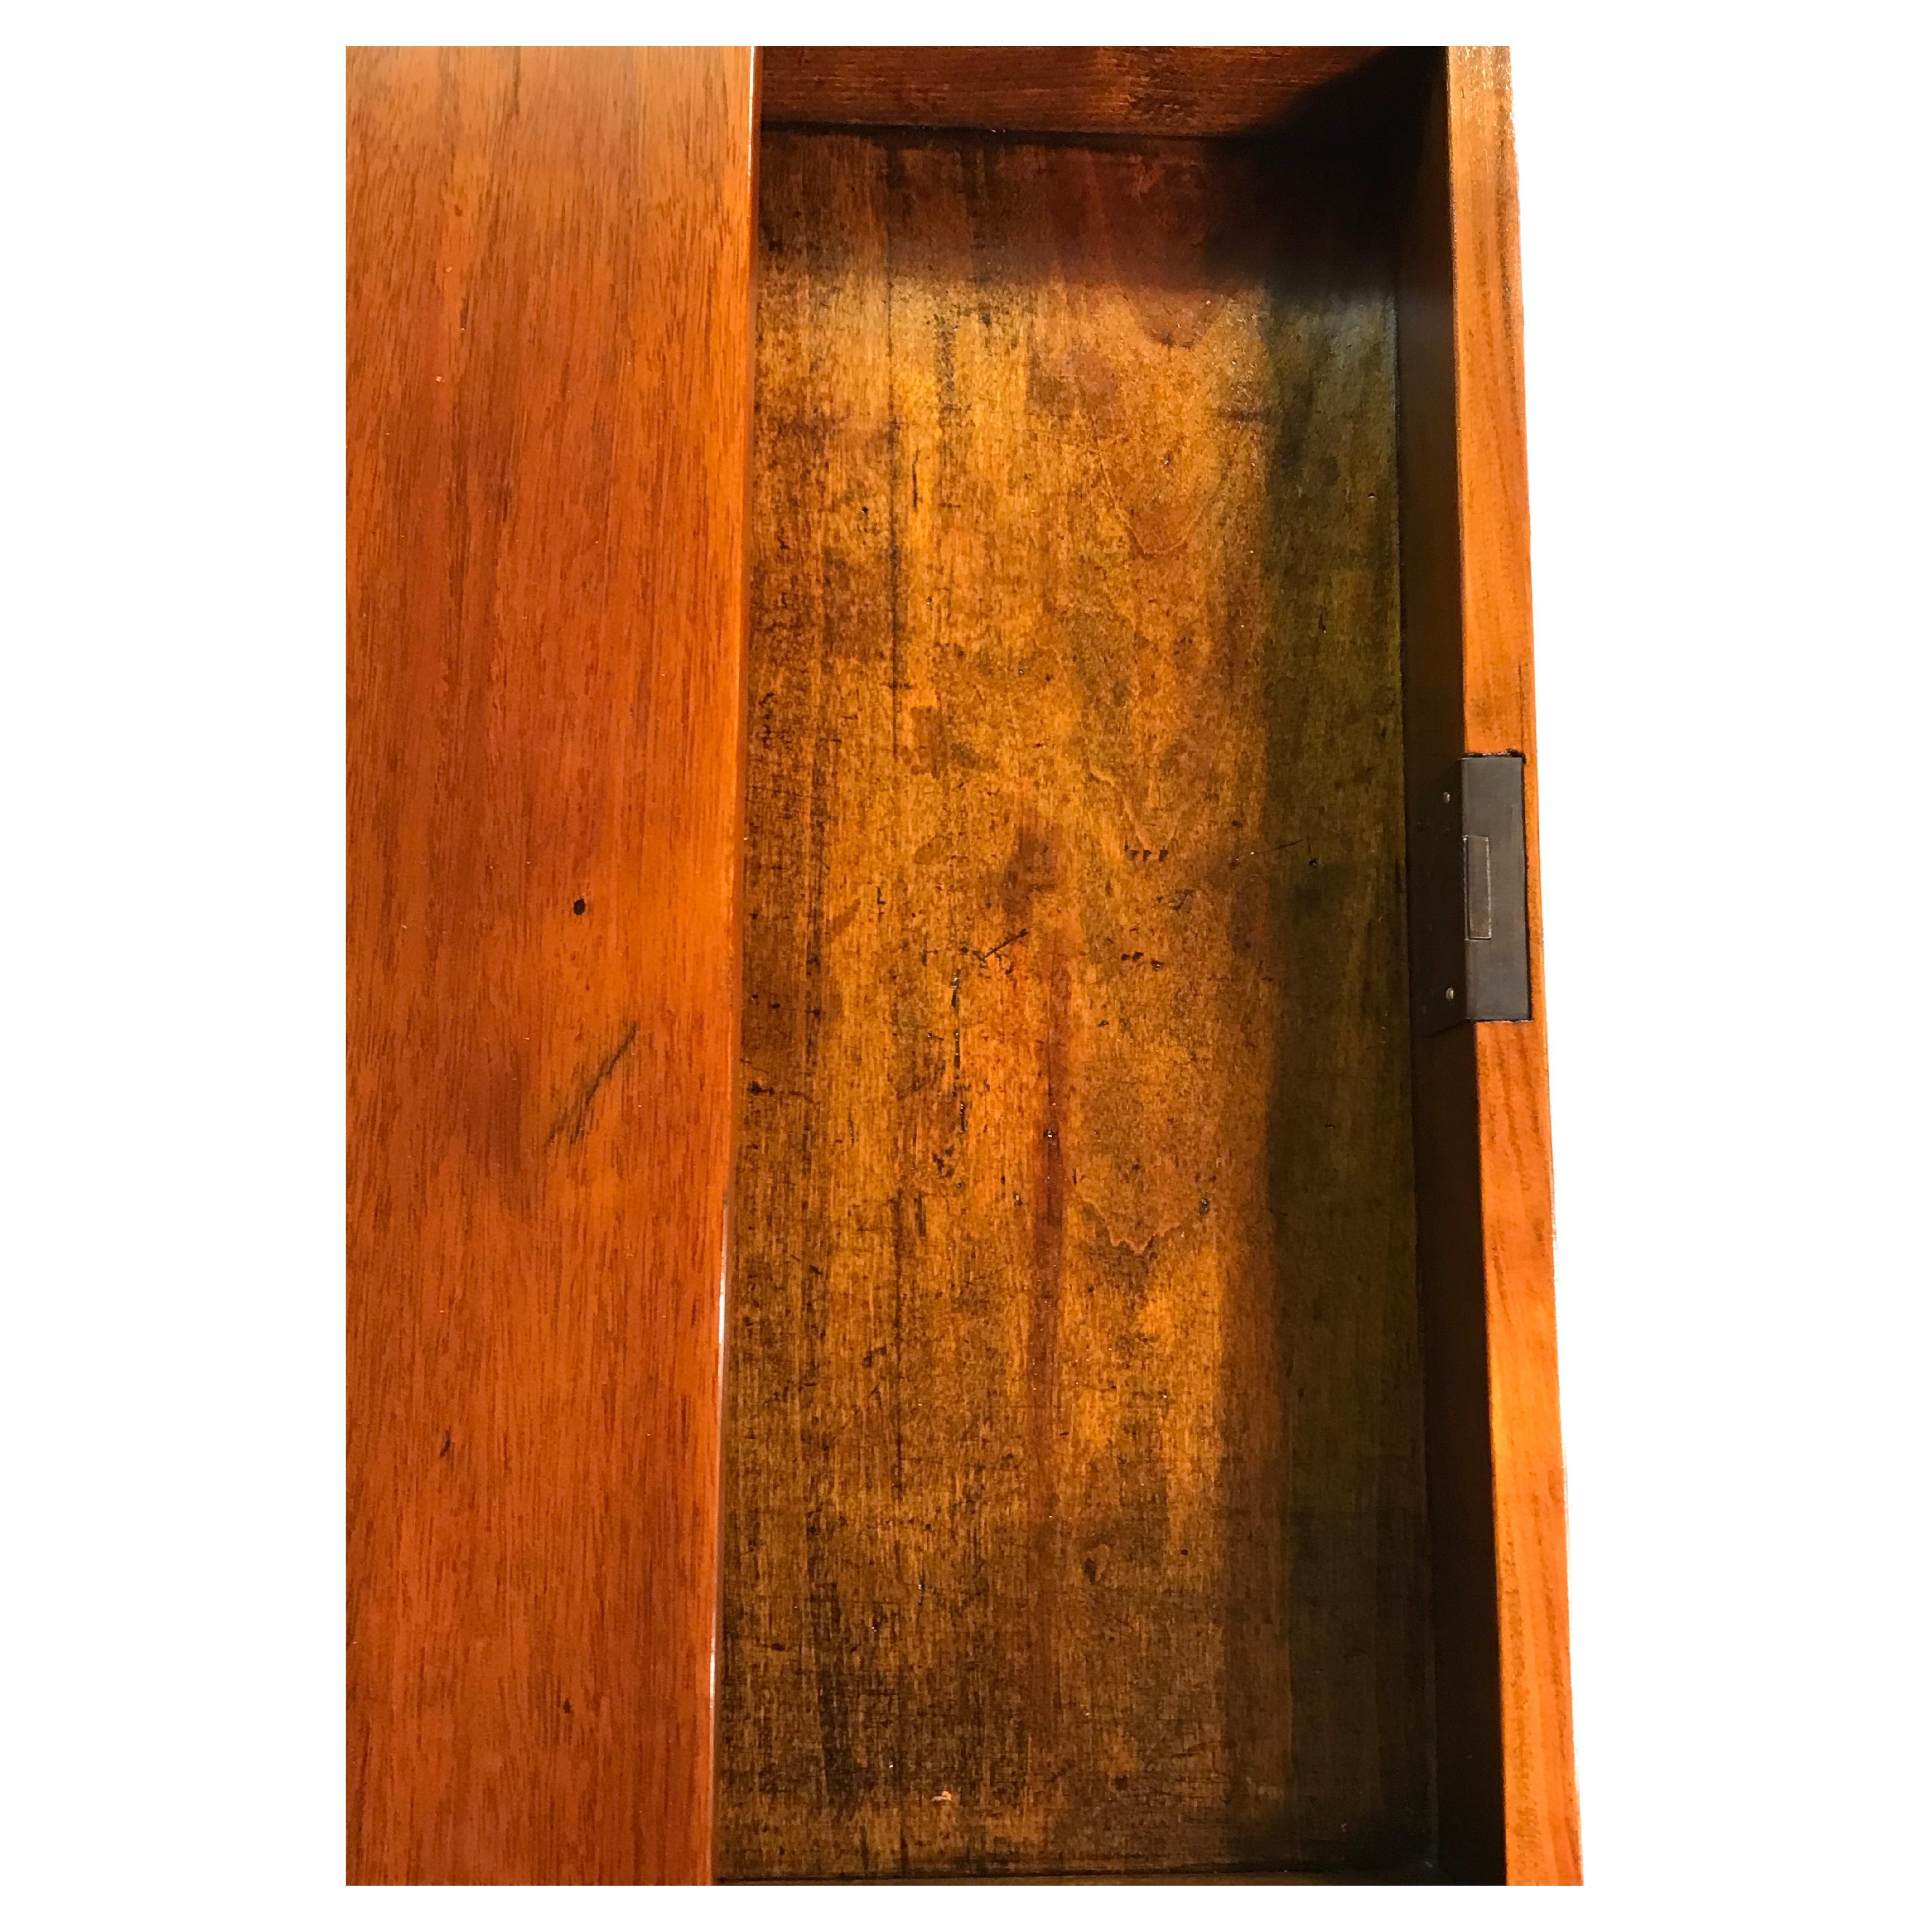 Dieser kleine neoklassizistische Schreibtisch oder Beistelltisch stammt aus der Zeit um 1810-20. Der rechteckige Tisch hat eine Schublade. Er hat ein hübsches Mahagoni-Furnier und ist zusätzlich mit geometrischen, eingelegten Messingbändern